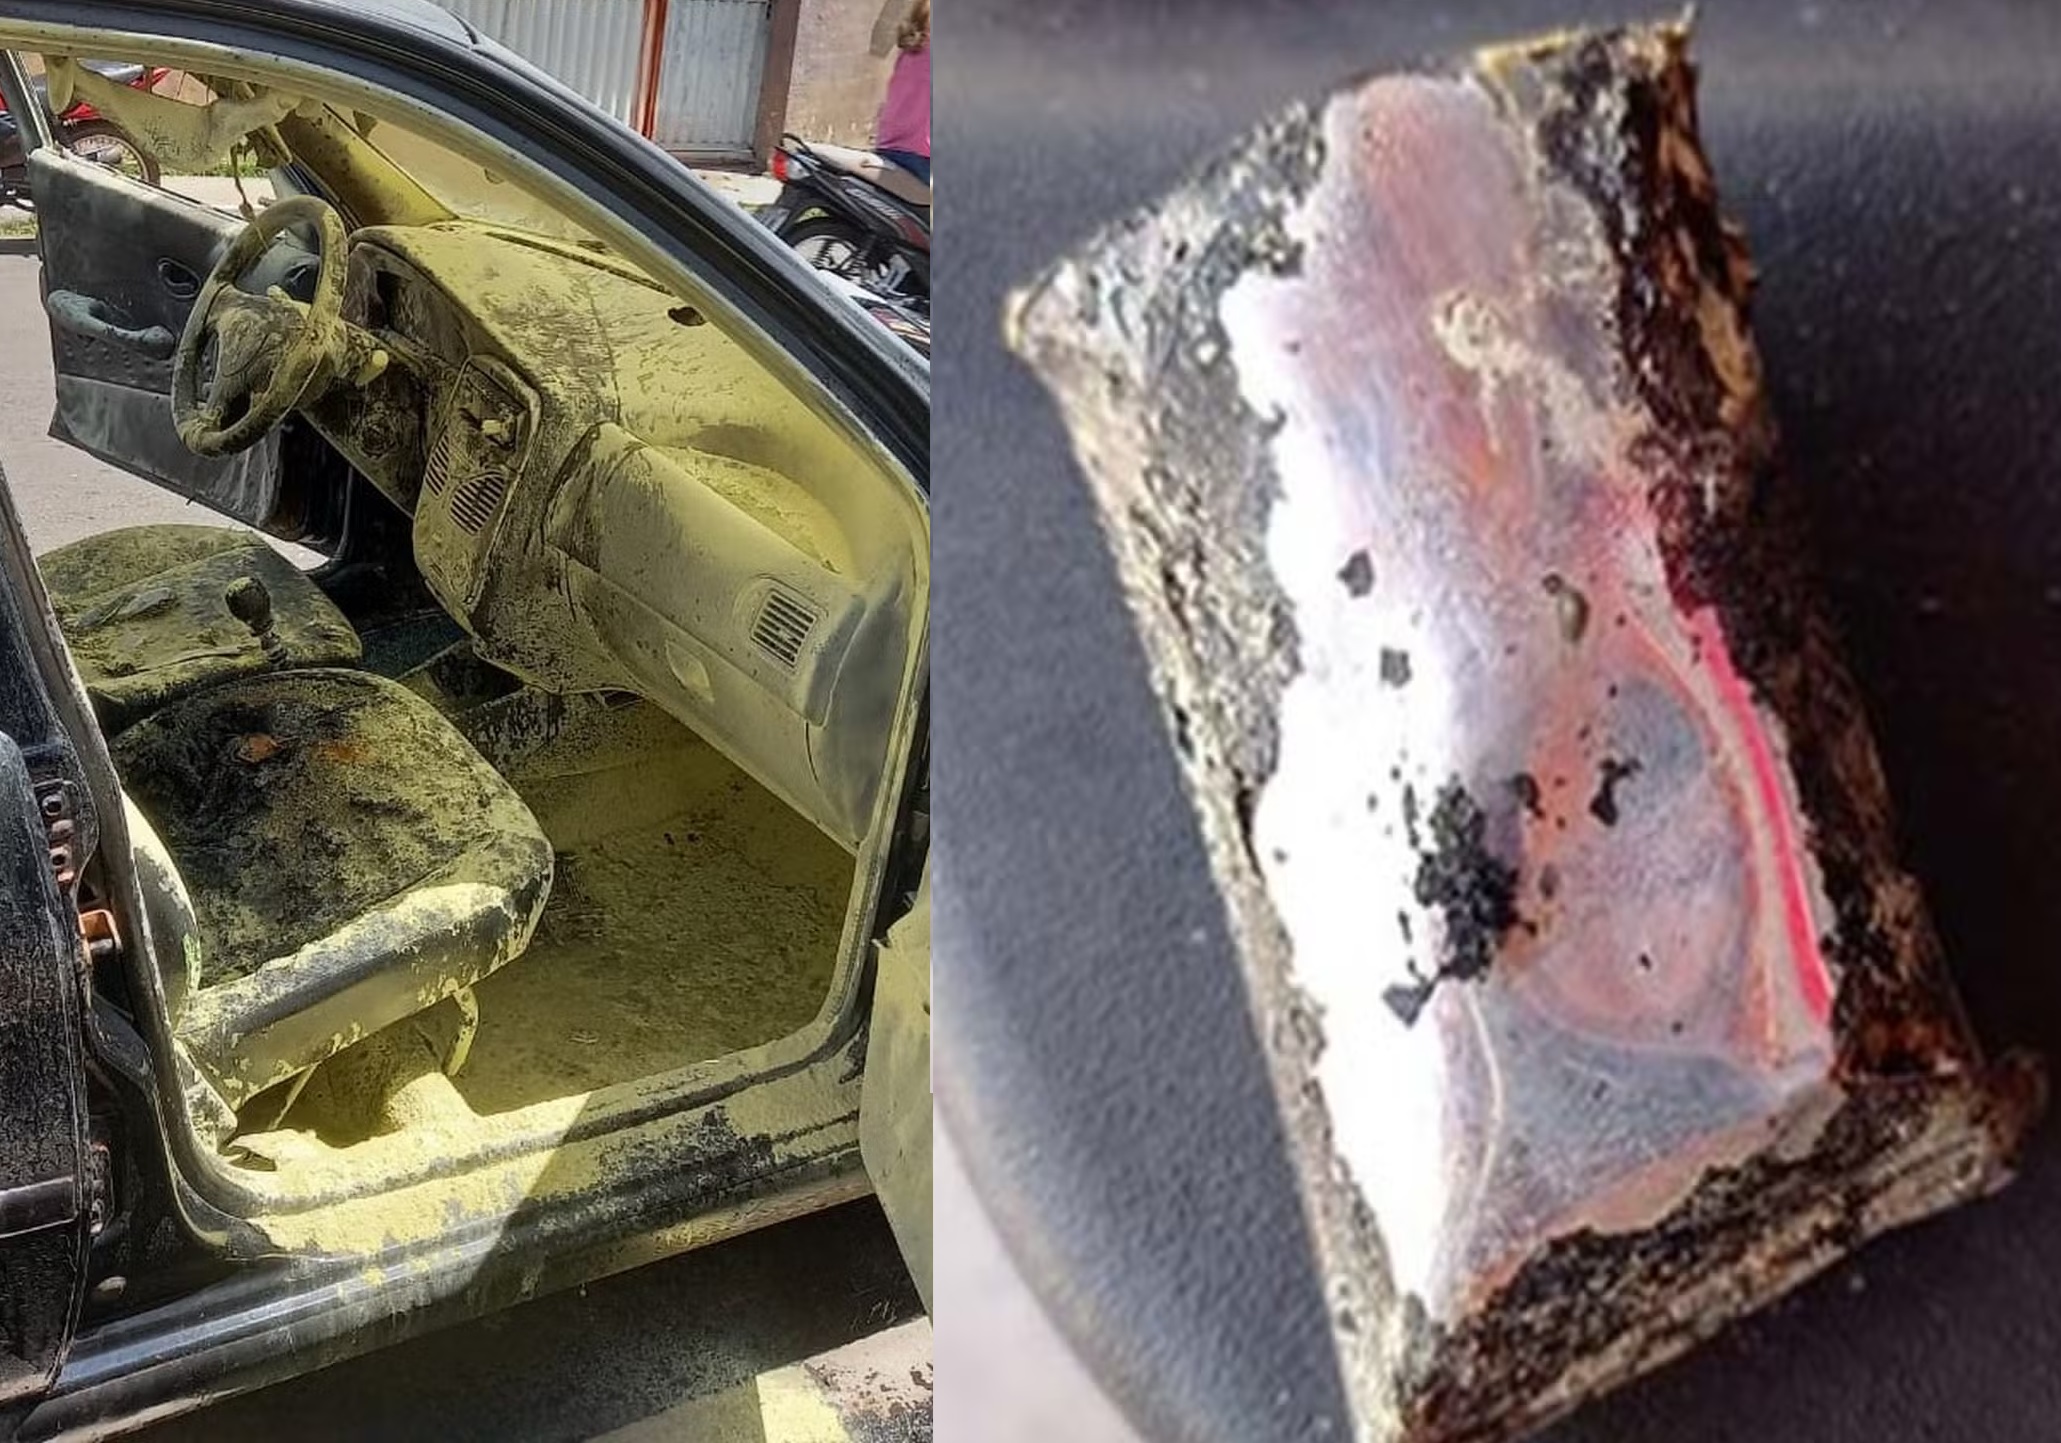 Bateria de celular explode dentro de carro e causa incêndio no Piauí -  Municípios